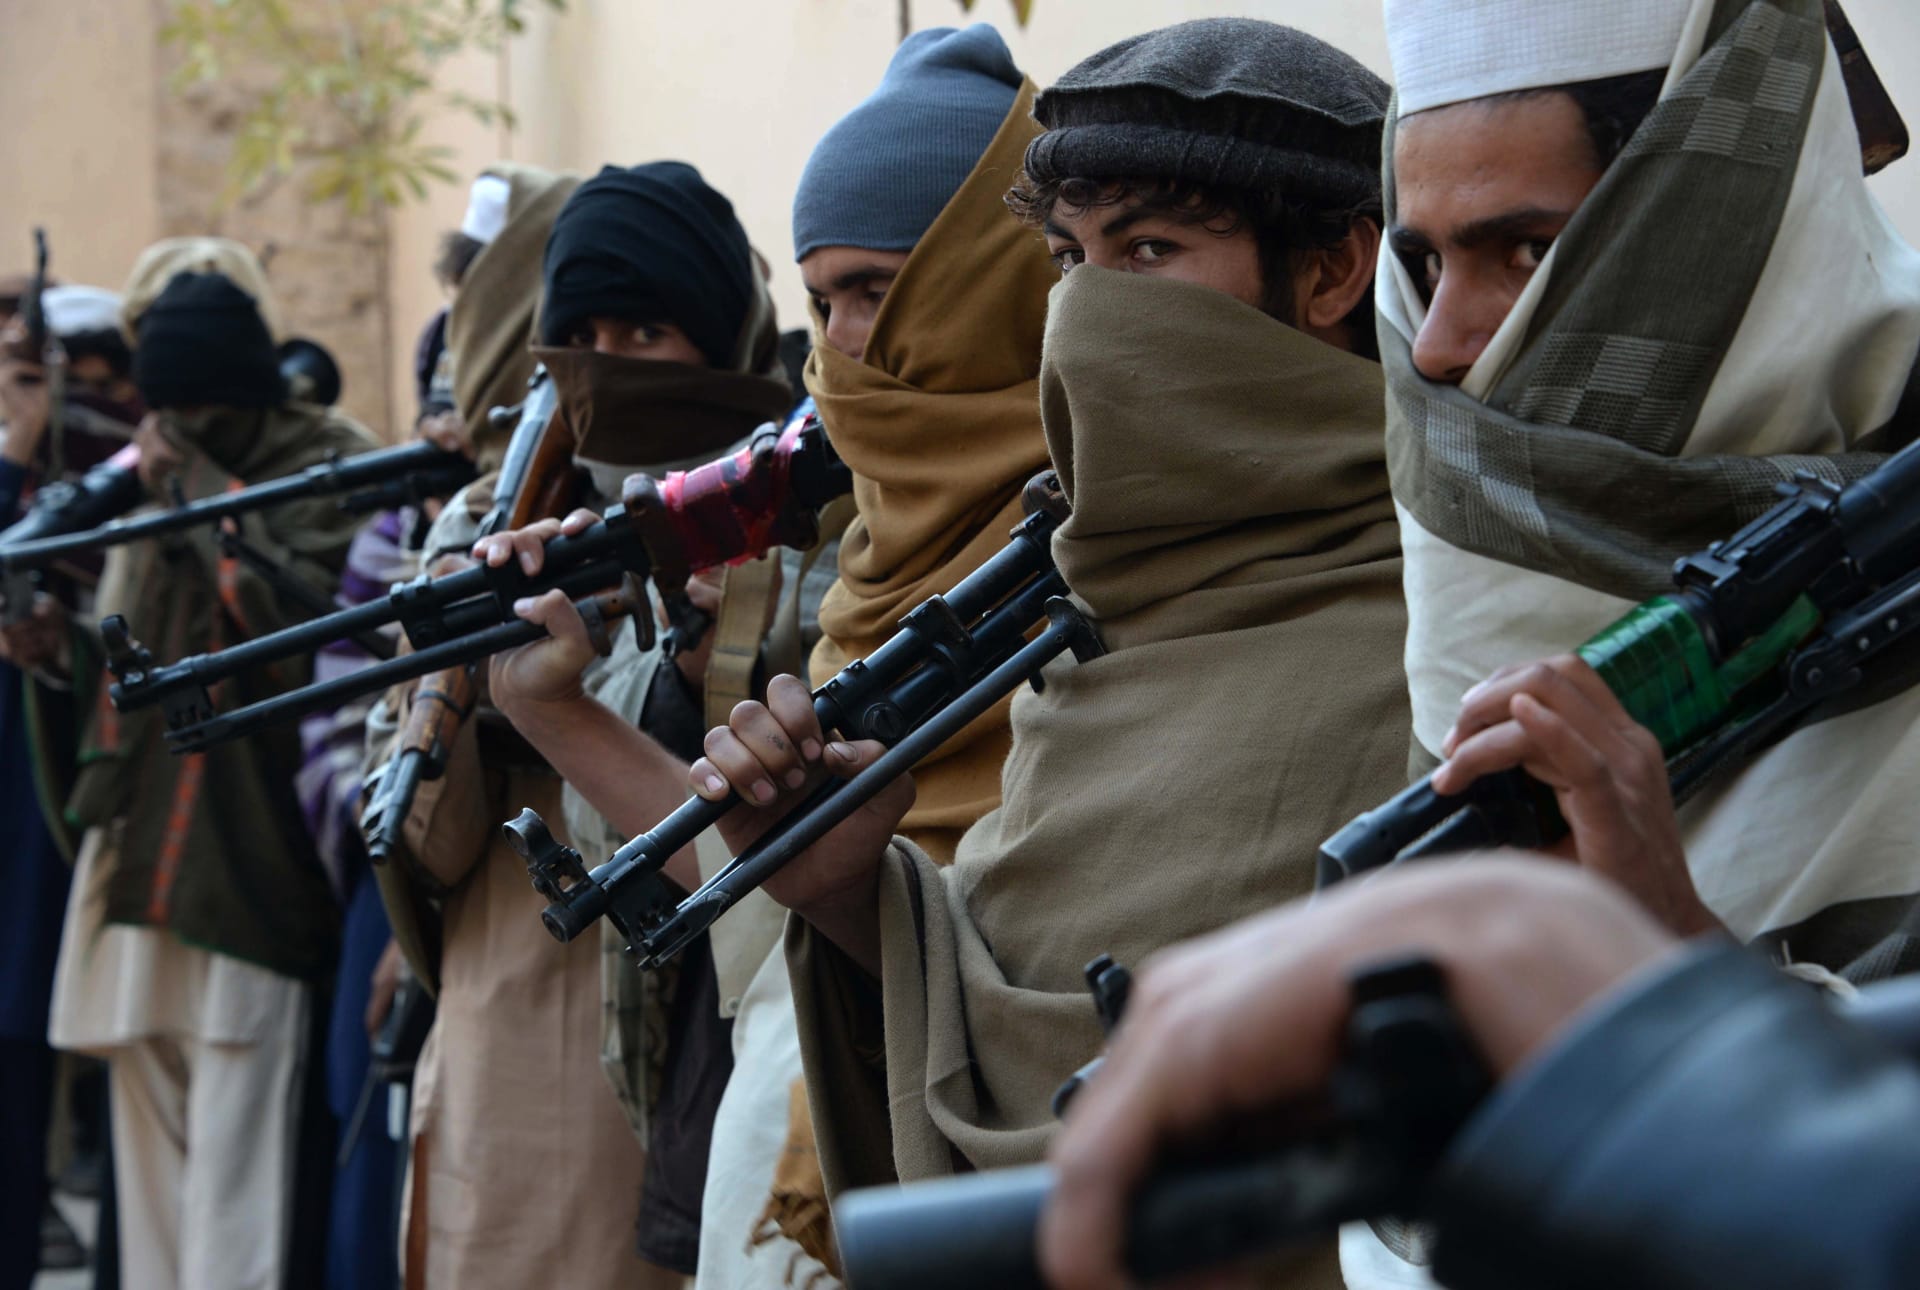 أفغانستان تعلن اعتقال 4 أشخاص من "ولاية خراسان" التابعة لـ"داعش"